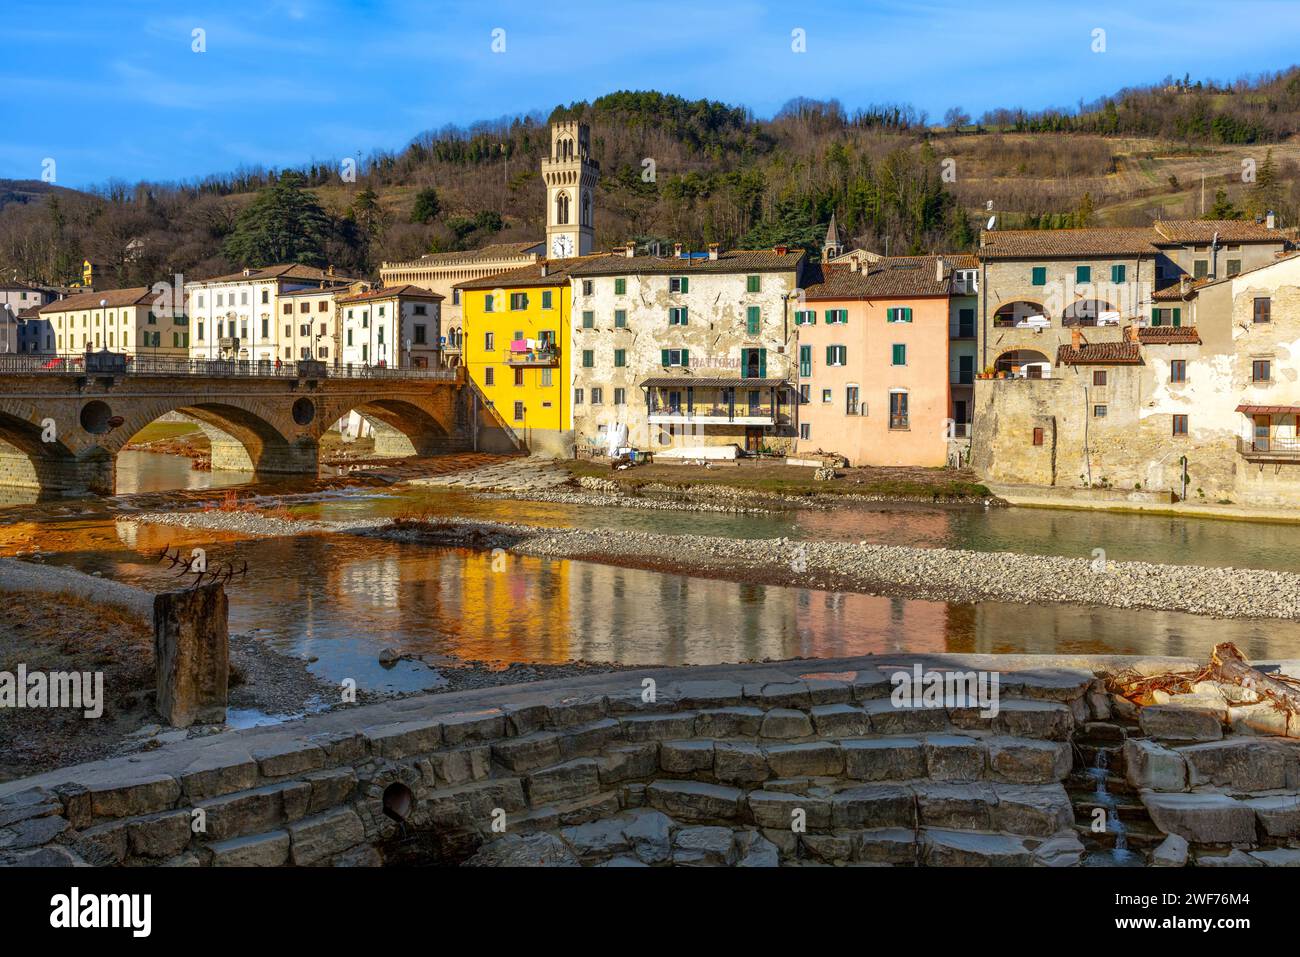 Die Altstadt von Santa Sofia in der Emilia-Romagna, Italien. Stockfoto